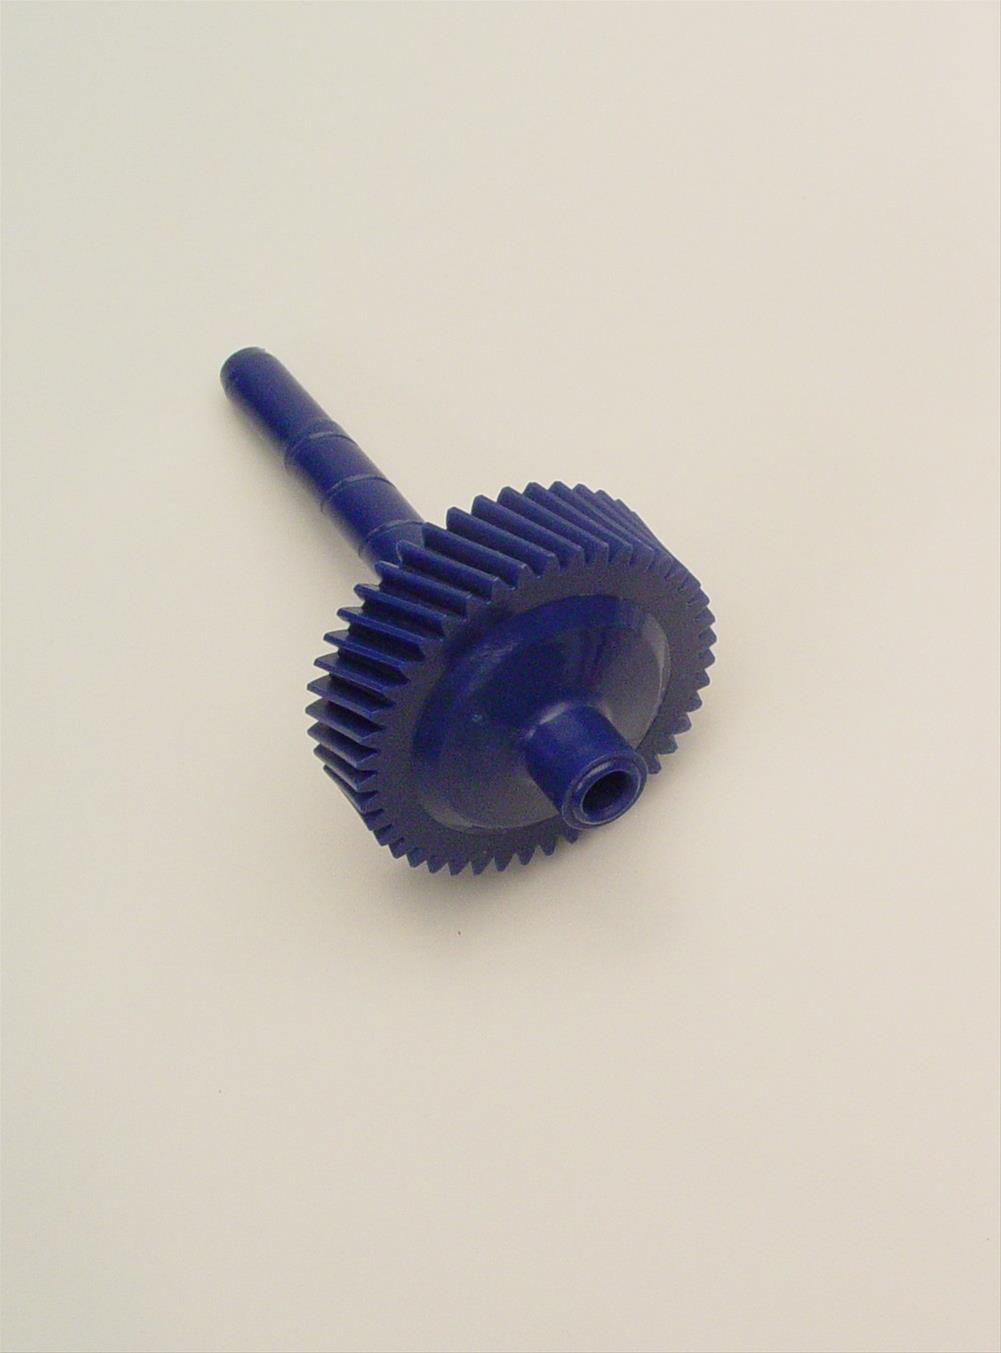 TCI 880036 Spdometr Gear Gm 30T Blue 